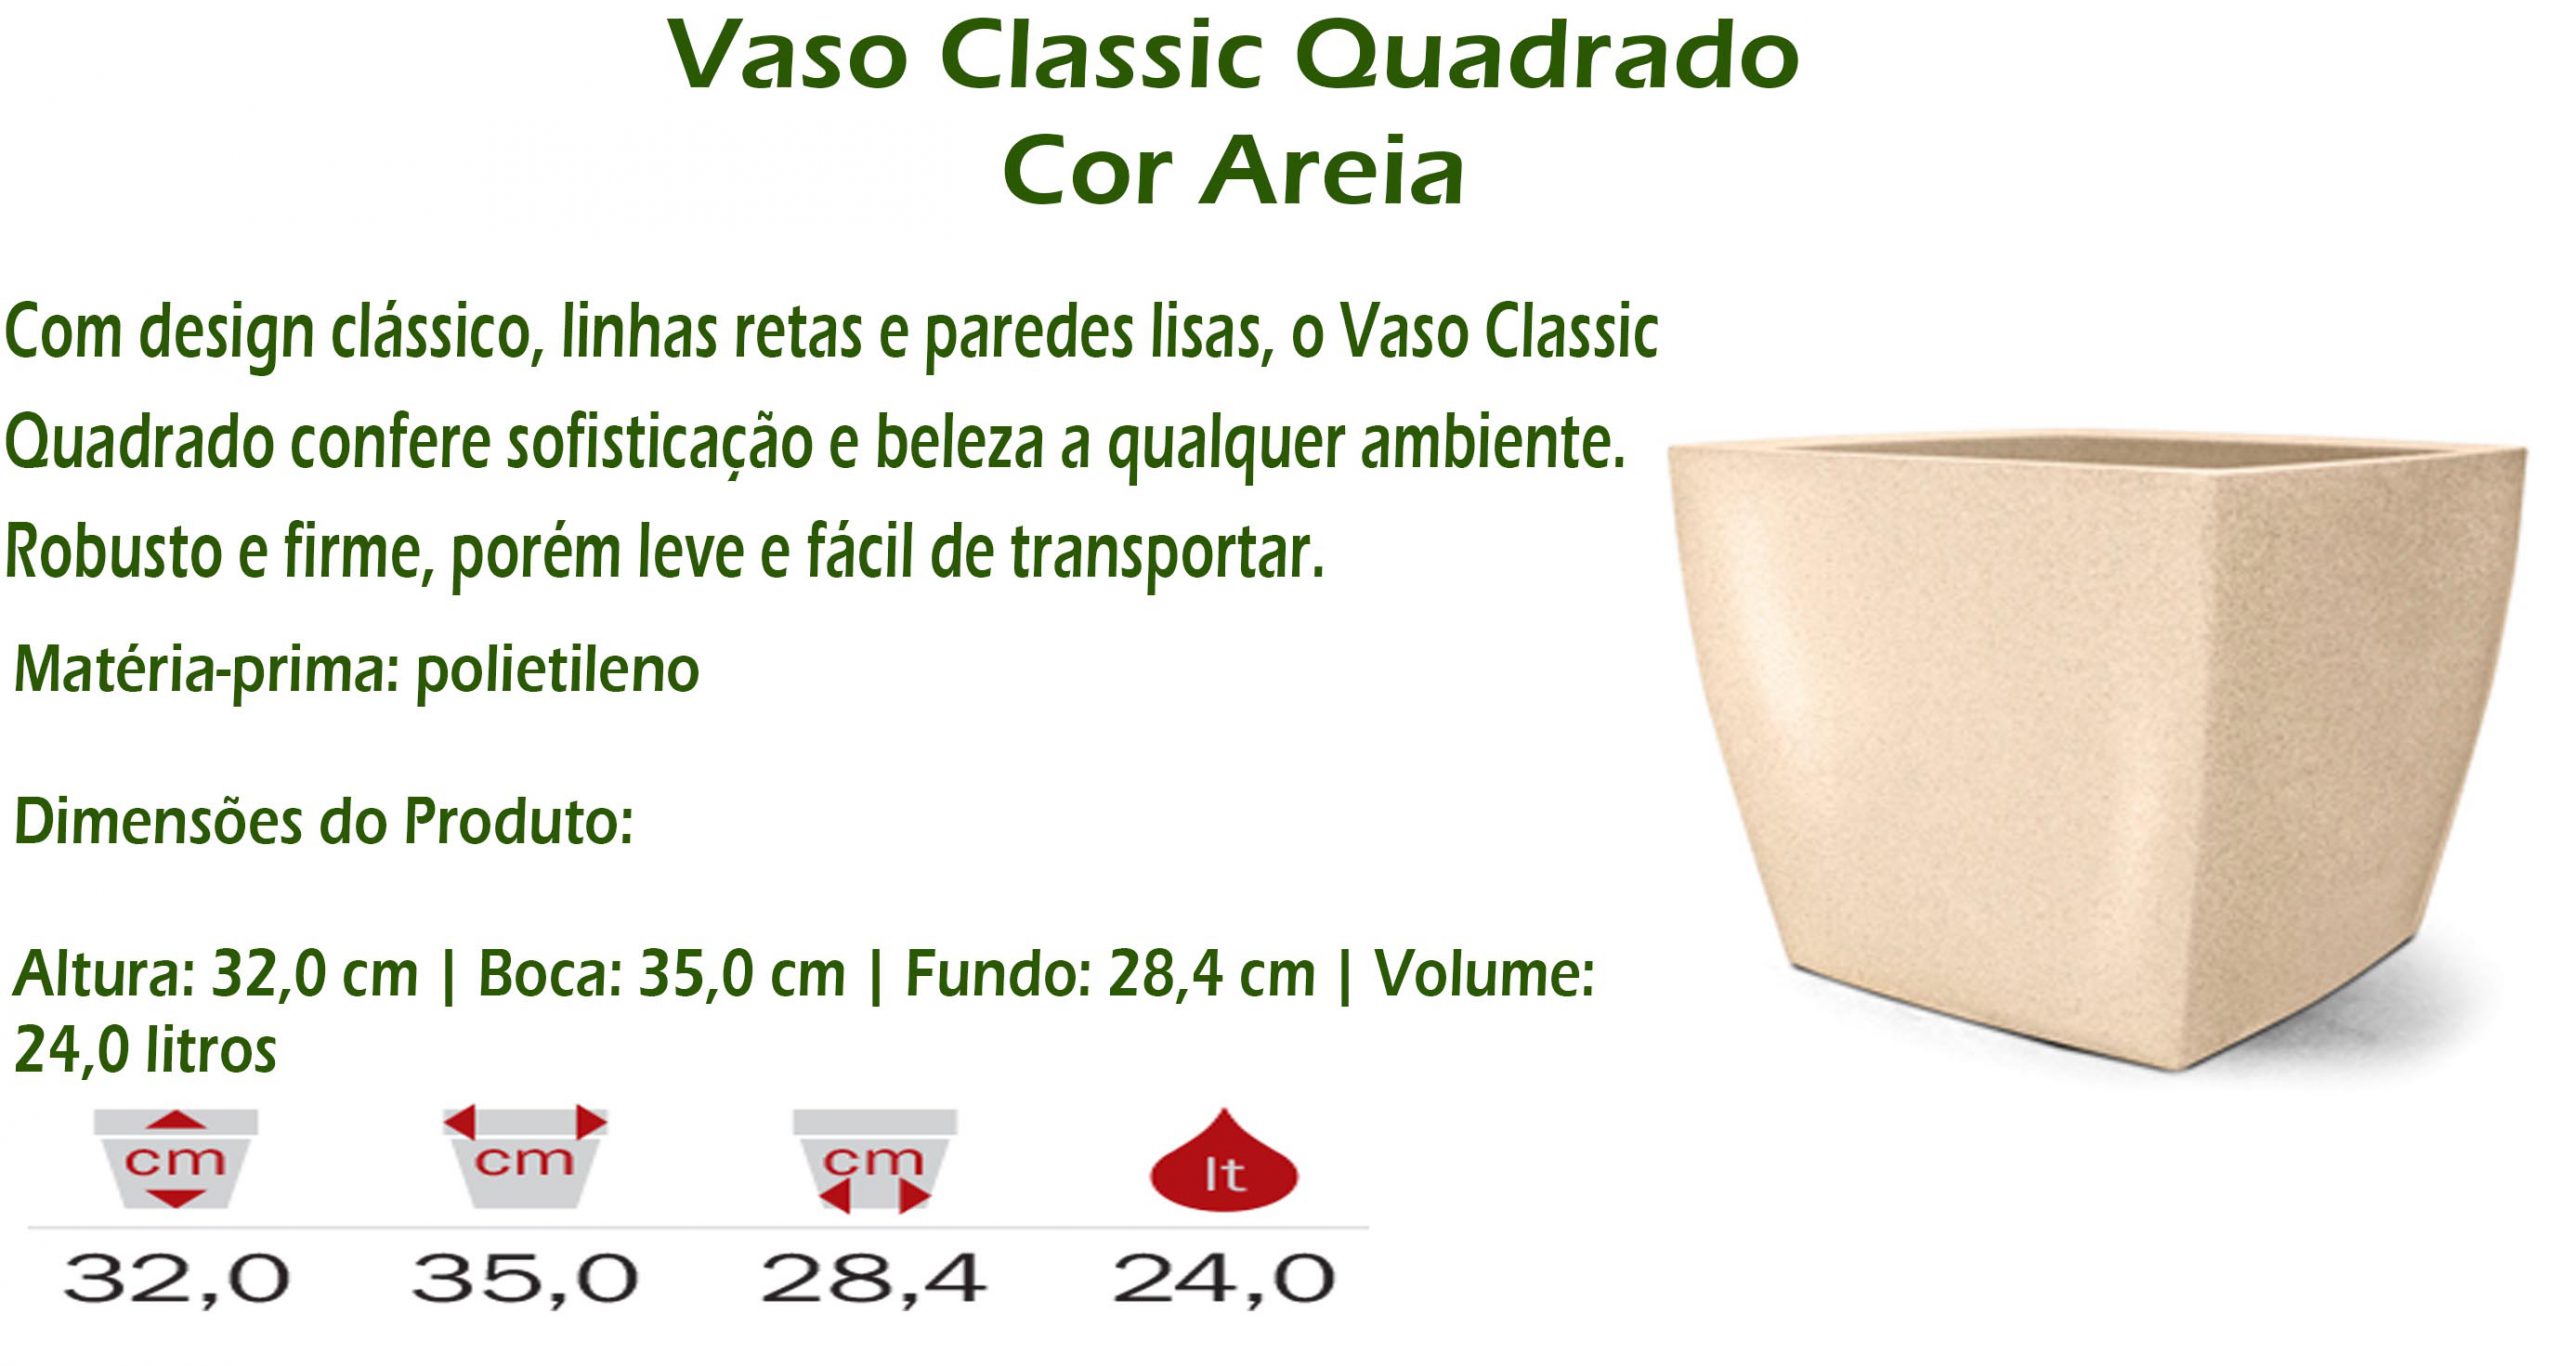 Vaso Classic Quadrado - cor areia